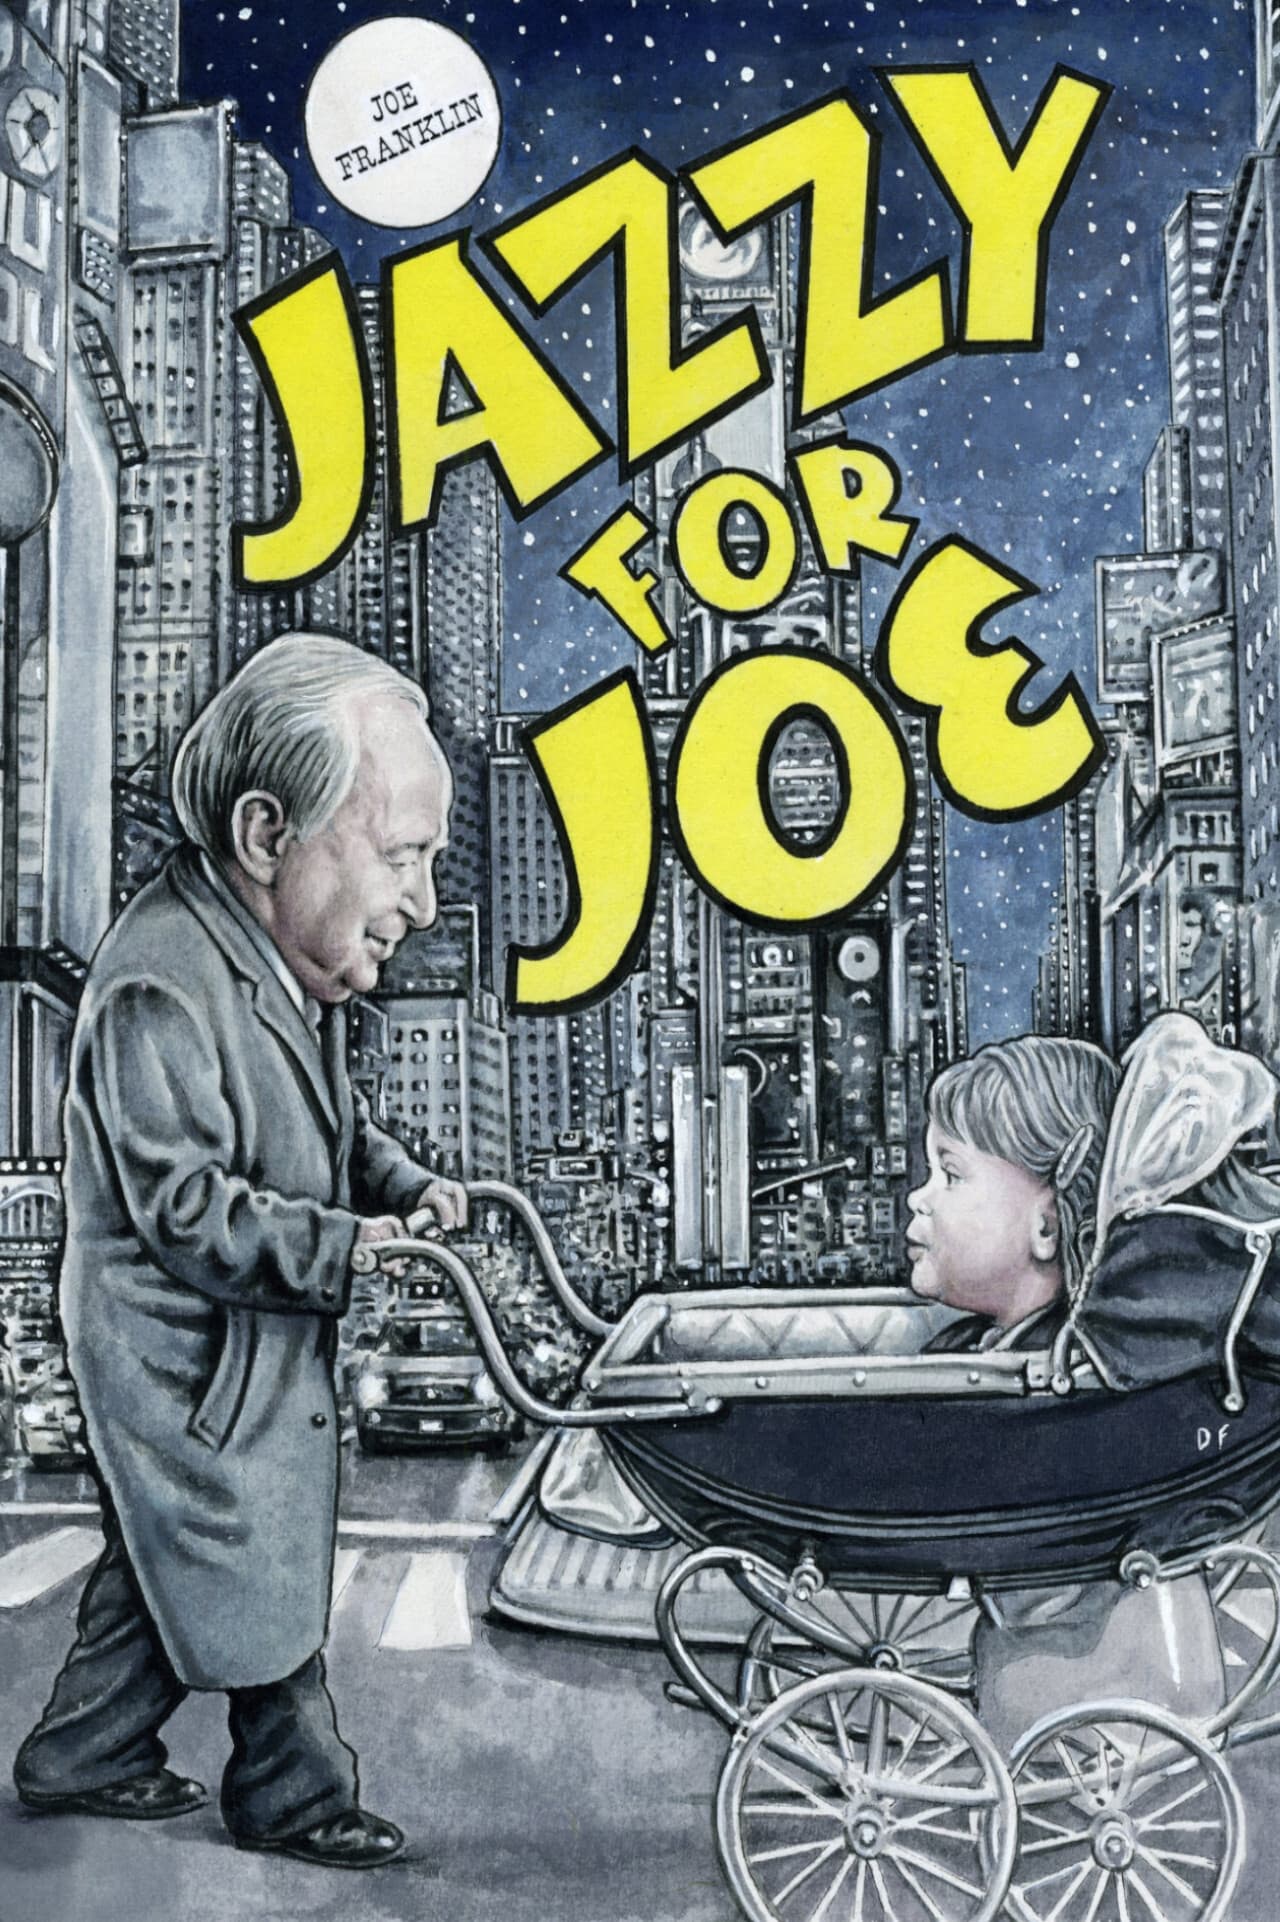 Jazzy for Joe